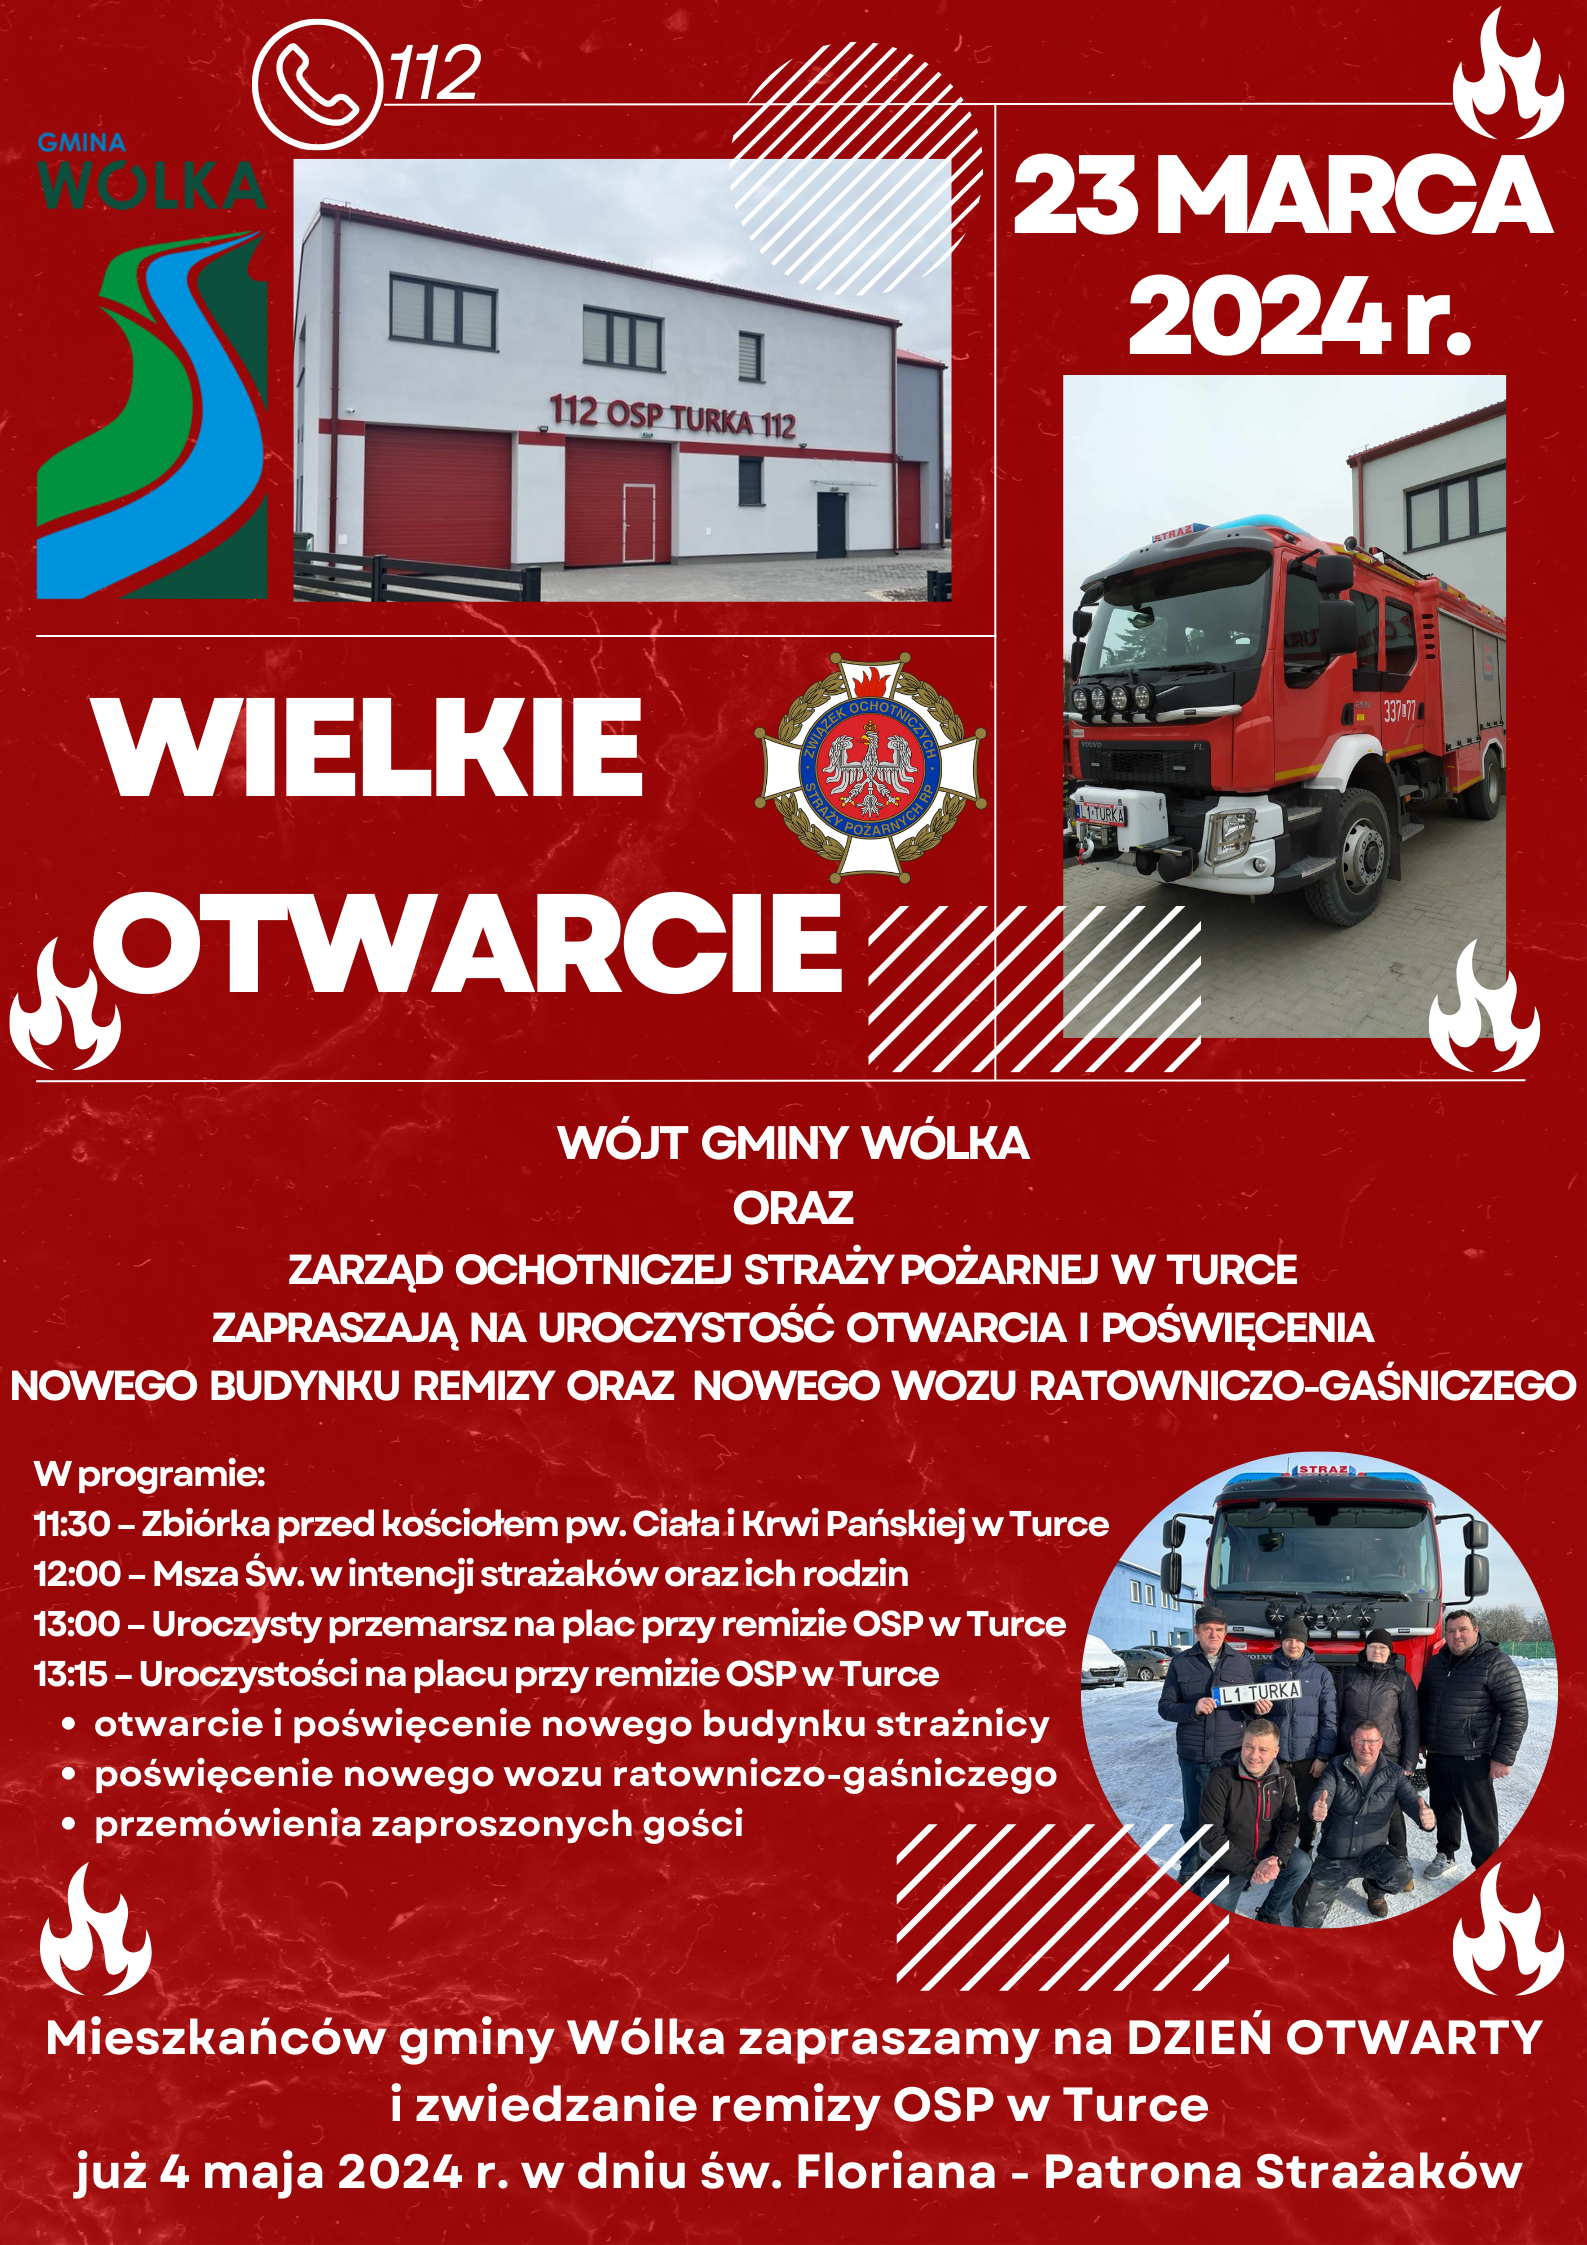 Plakat informacyjny ogłaszający wielkie otwarcie OSP Wołka 23 marca 2024 roku, z grafiką strażackiego wozu bojowego i strażaka, wraz z harmonogramem wydarzeń i kontaktami.